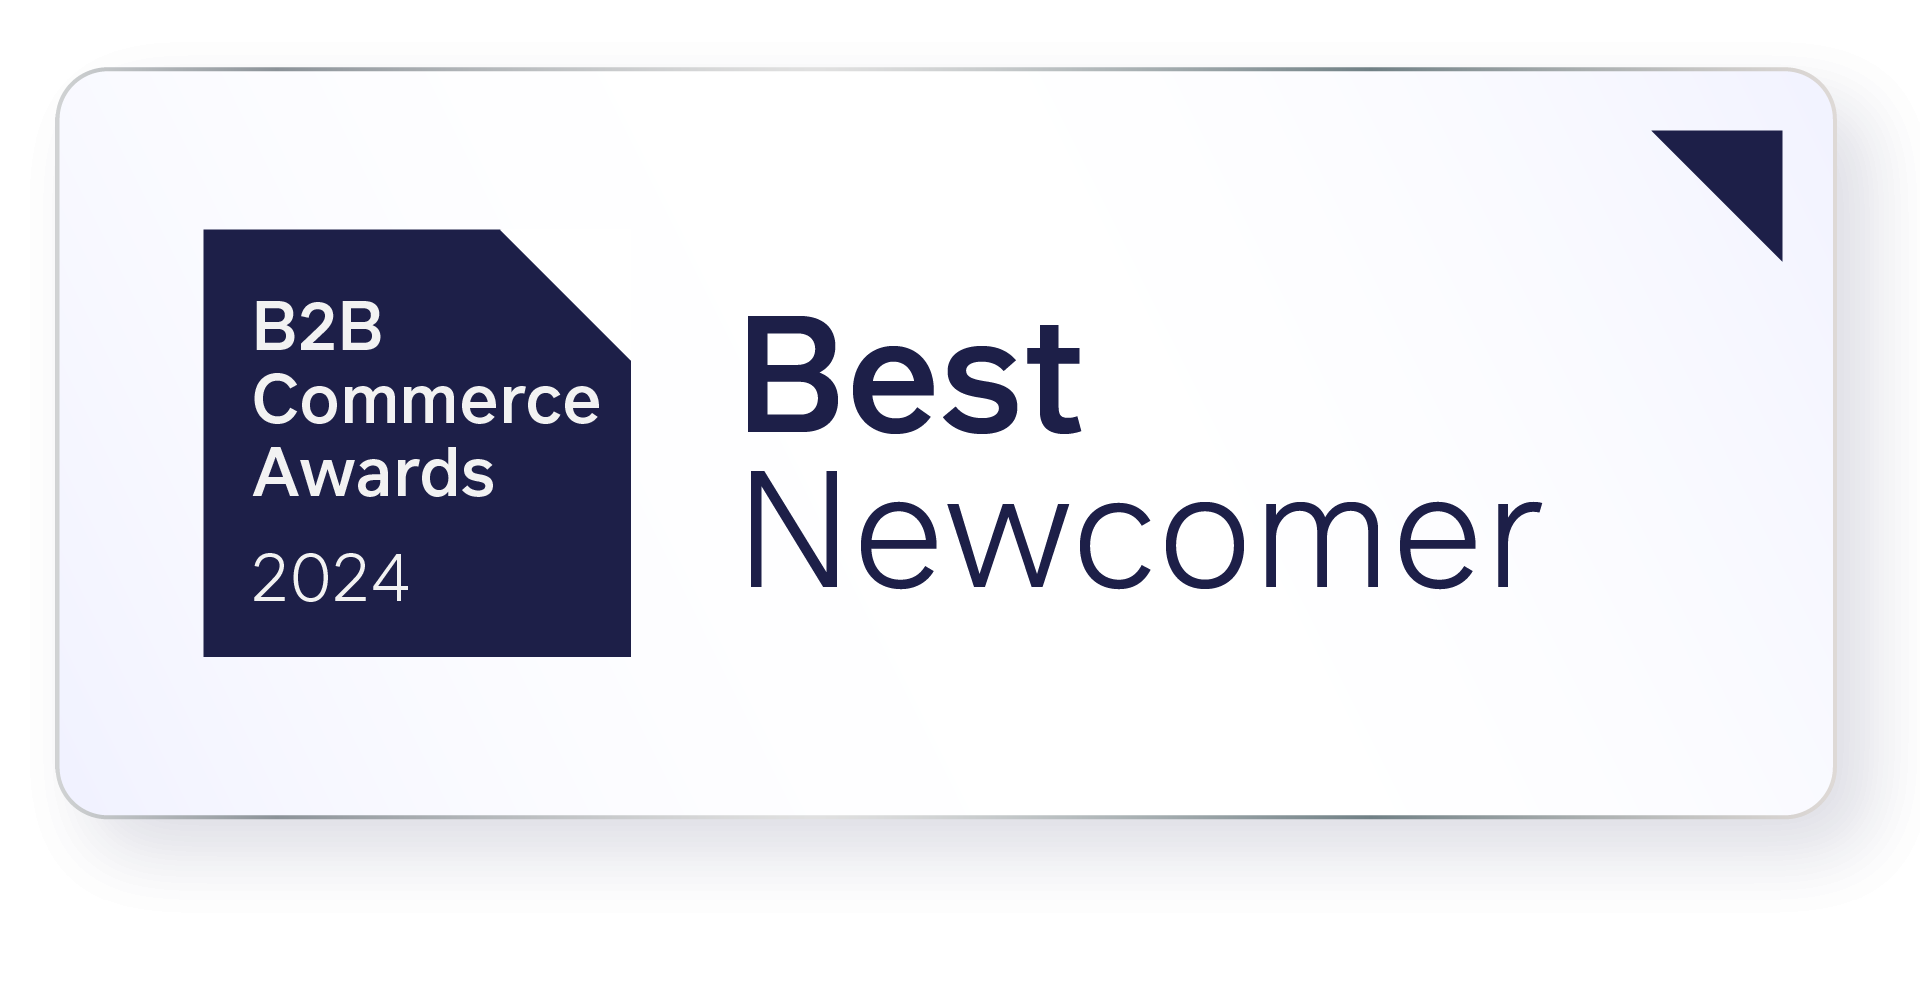 e-commerce awards best newcomer